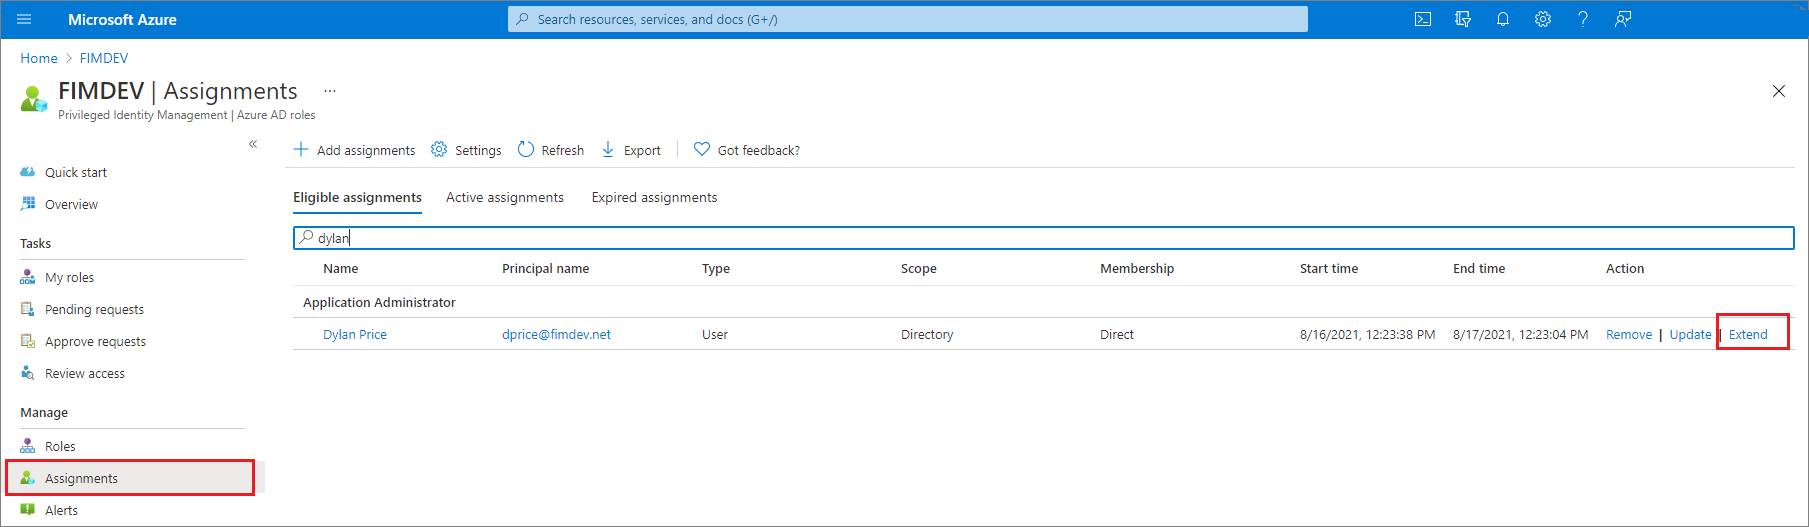 Képernyőkép a Microsoft Entra-szerepkörökről – A hozzárendelések lap a jogosult szerepkörök felsorolásával, valamint a kibővítendő hivatkozásokkal.